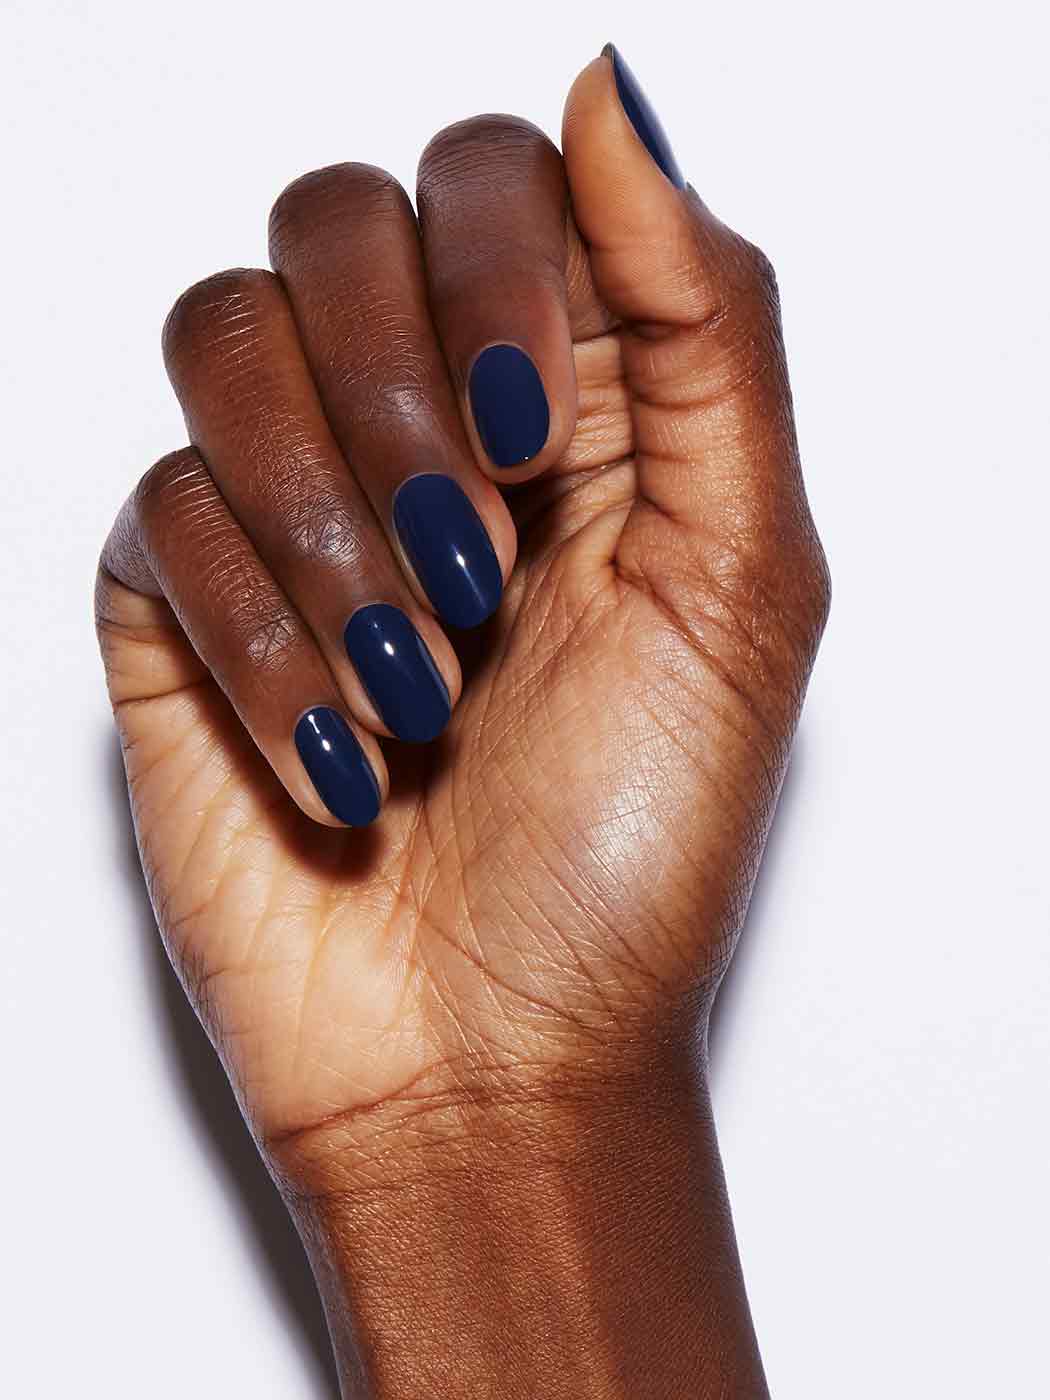 Nails on Black Skin | Cute nail colors, Dark skin nail polish, Fun nail  colors